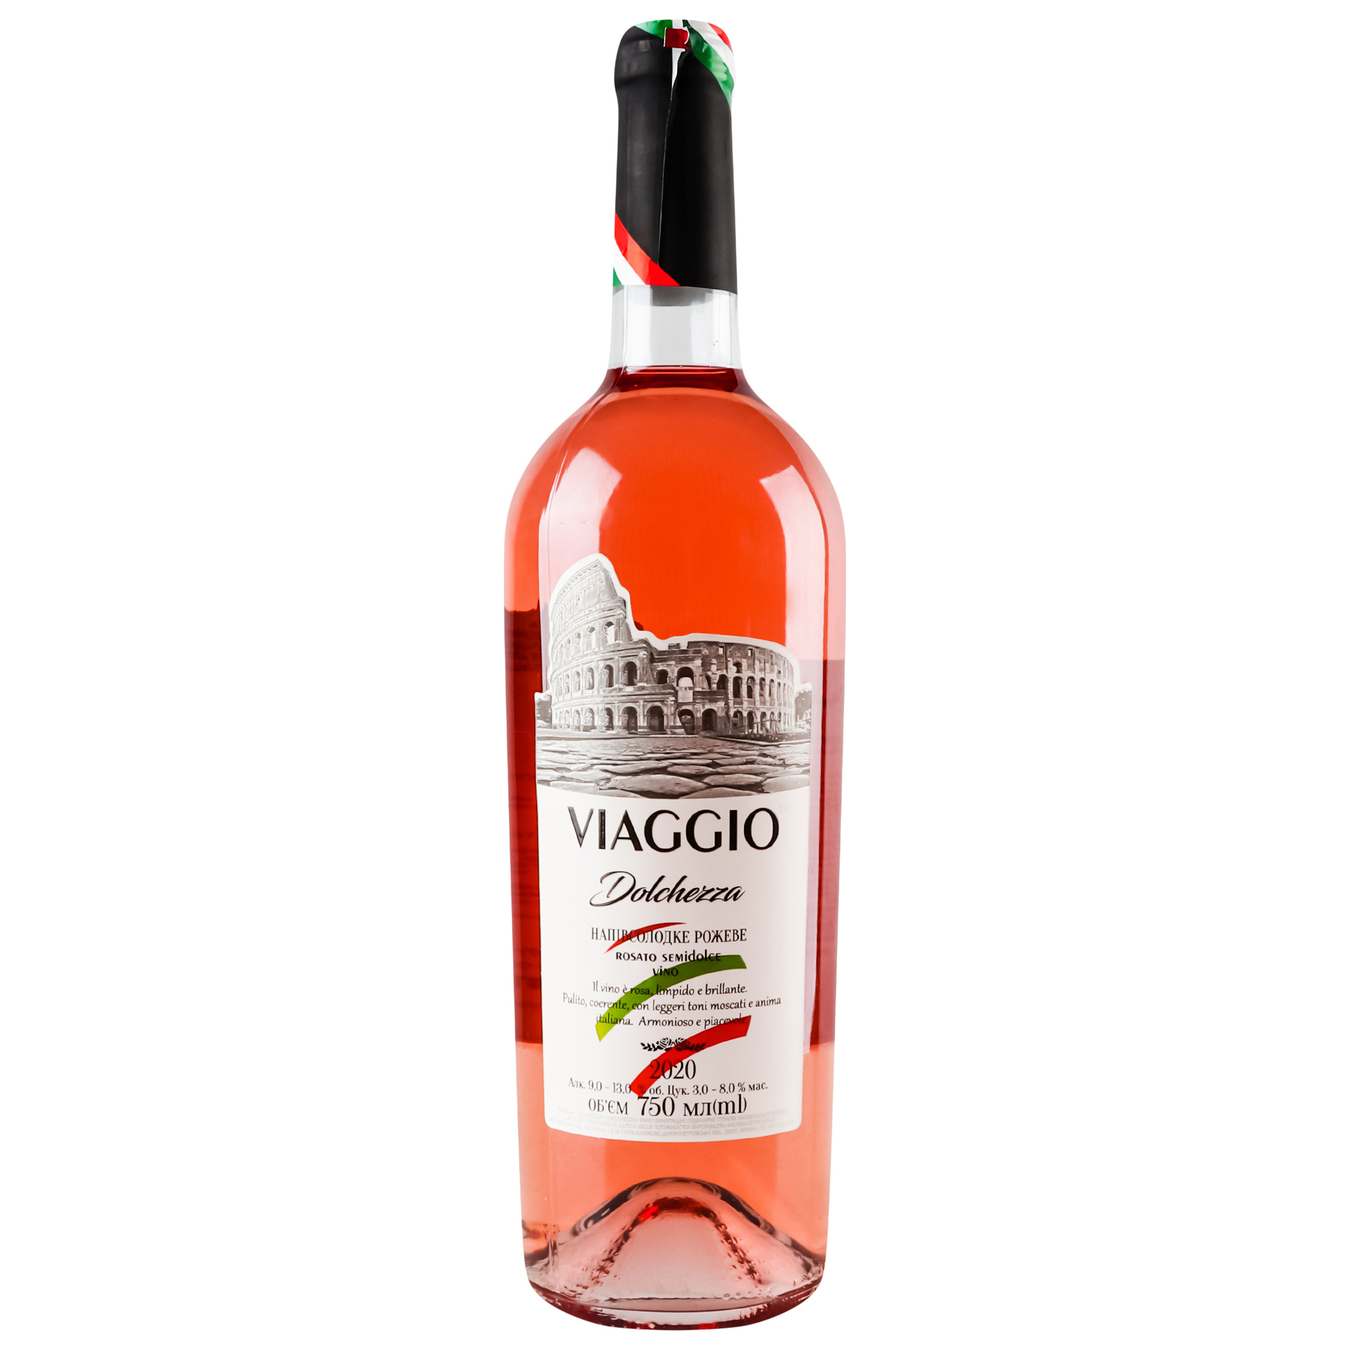 Вино Viaggioi Dolchezza розовое полусладкое 9,5-14% 0,75л